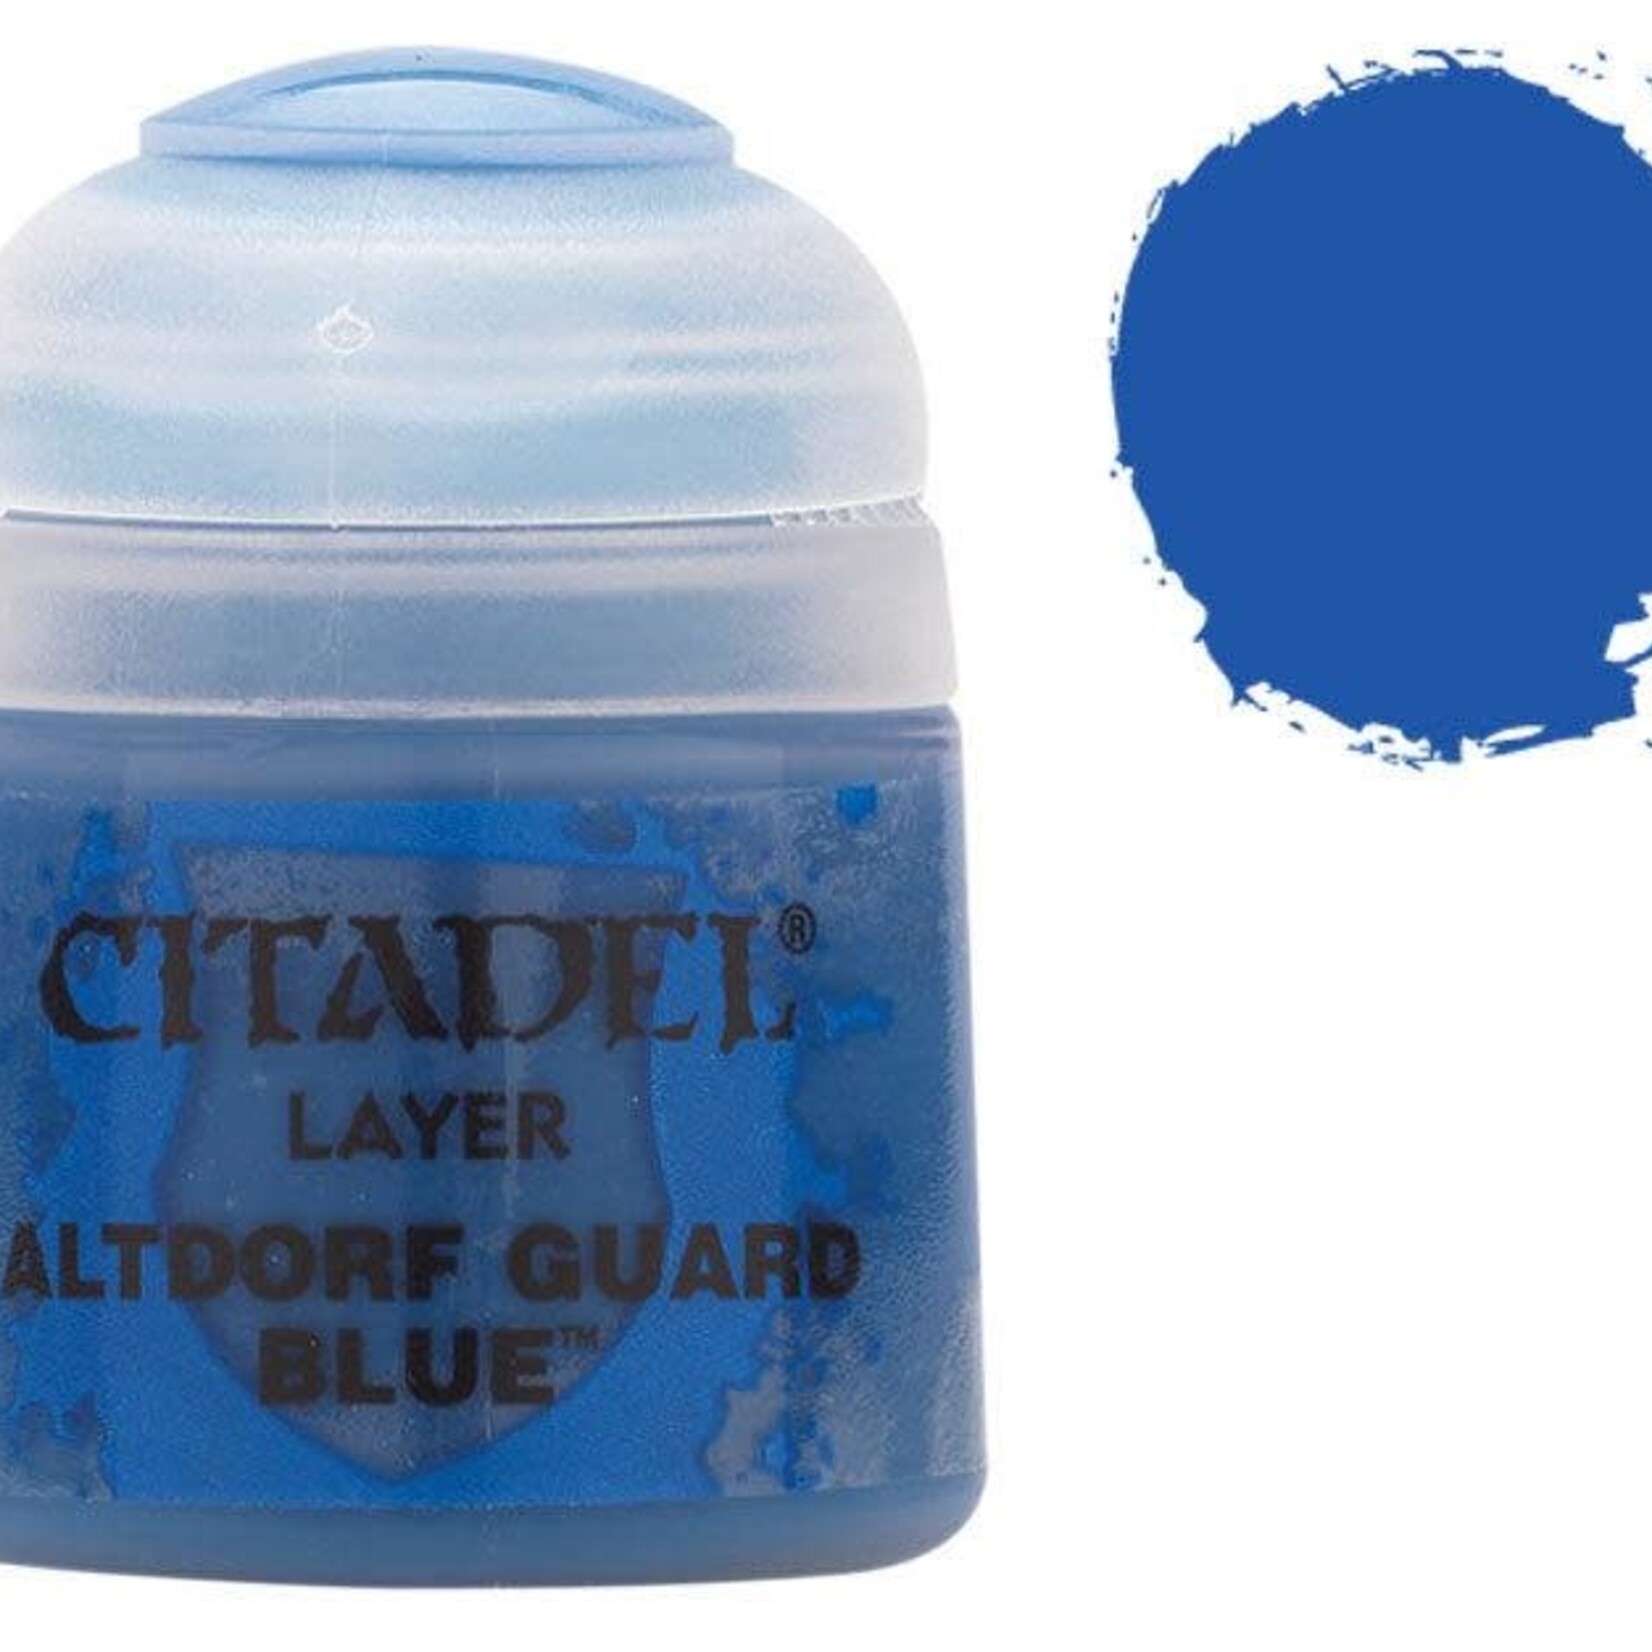 Games Workshop Citadel - Layer - Altdorf Guard Blue